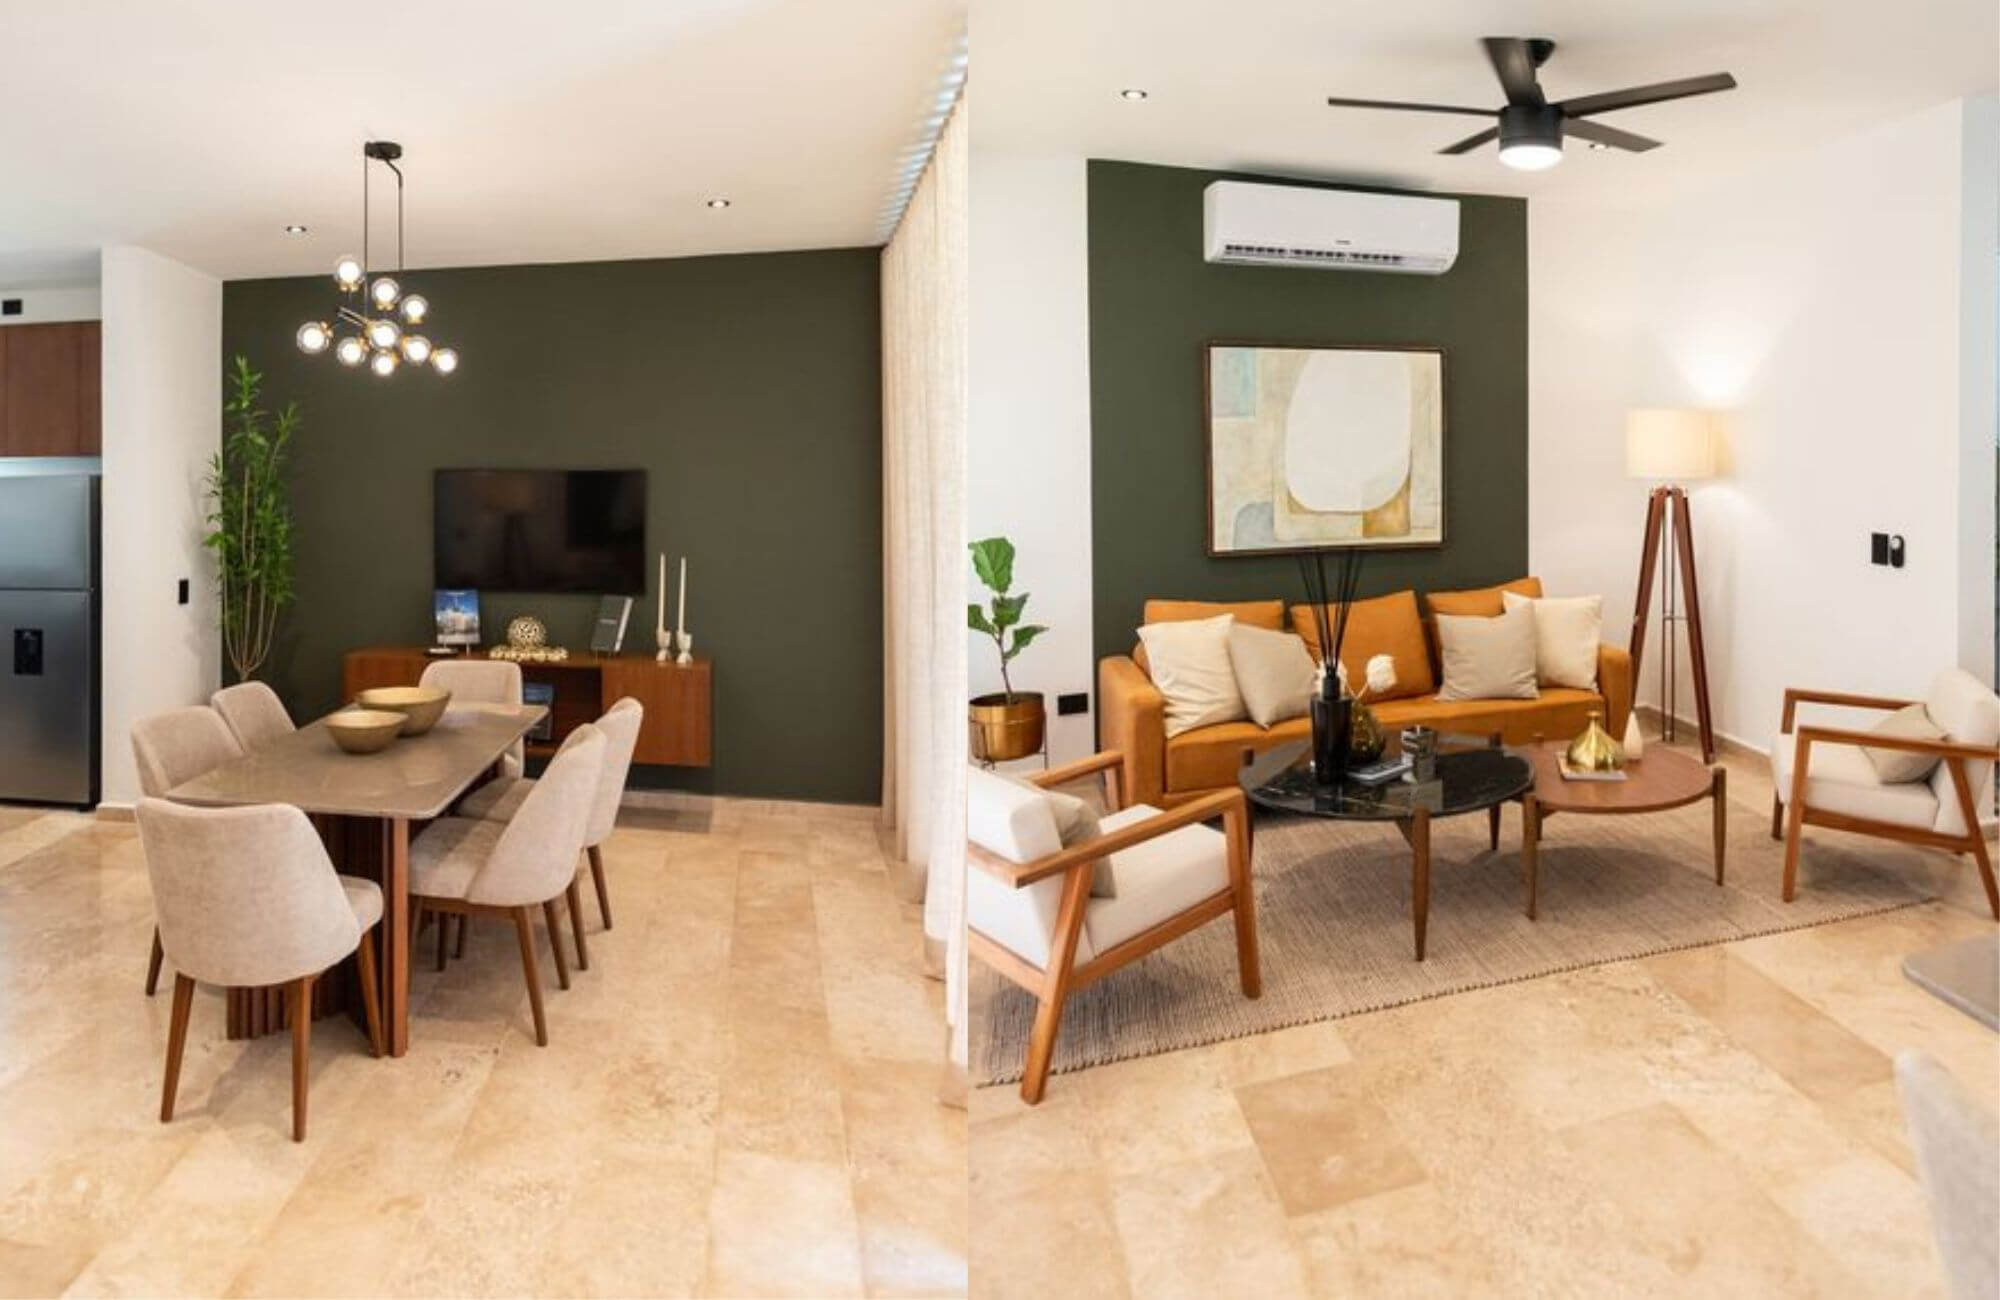 Residencia con jardín, alberca, cochera para 2 autos, en venta, Xcanatun, Merida, Yucatan.